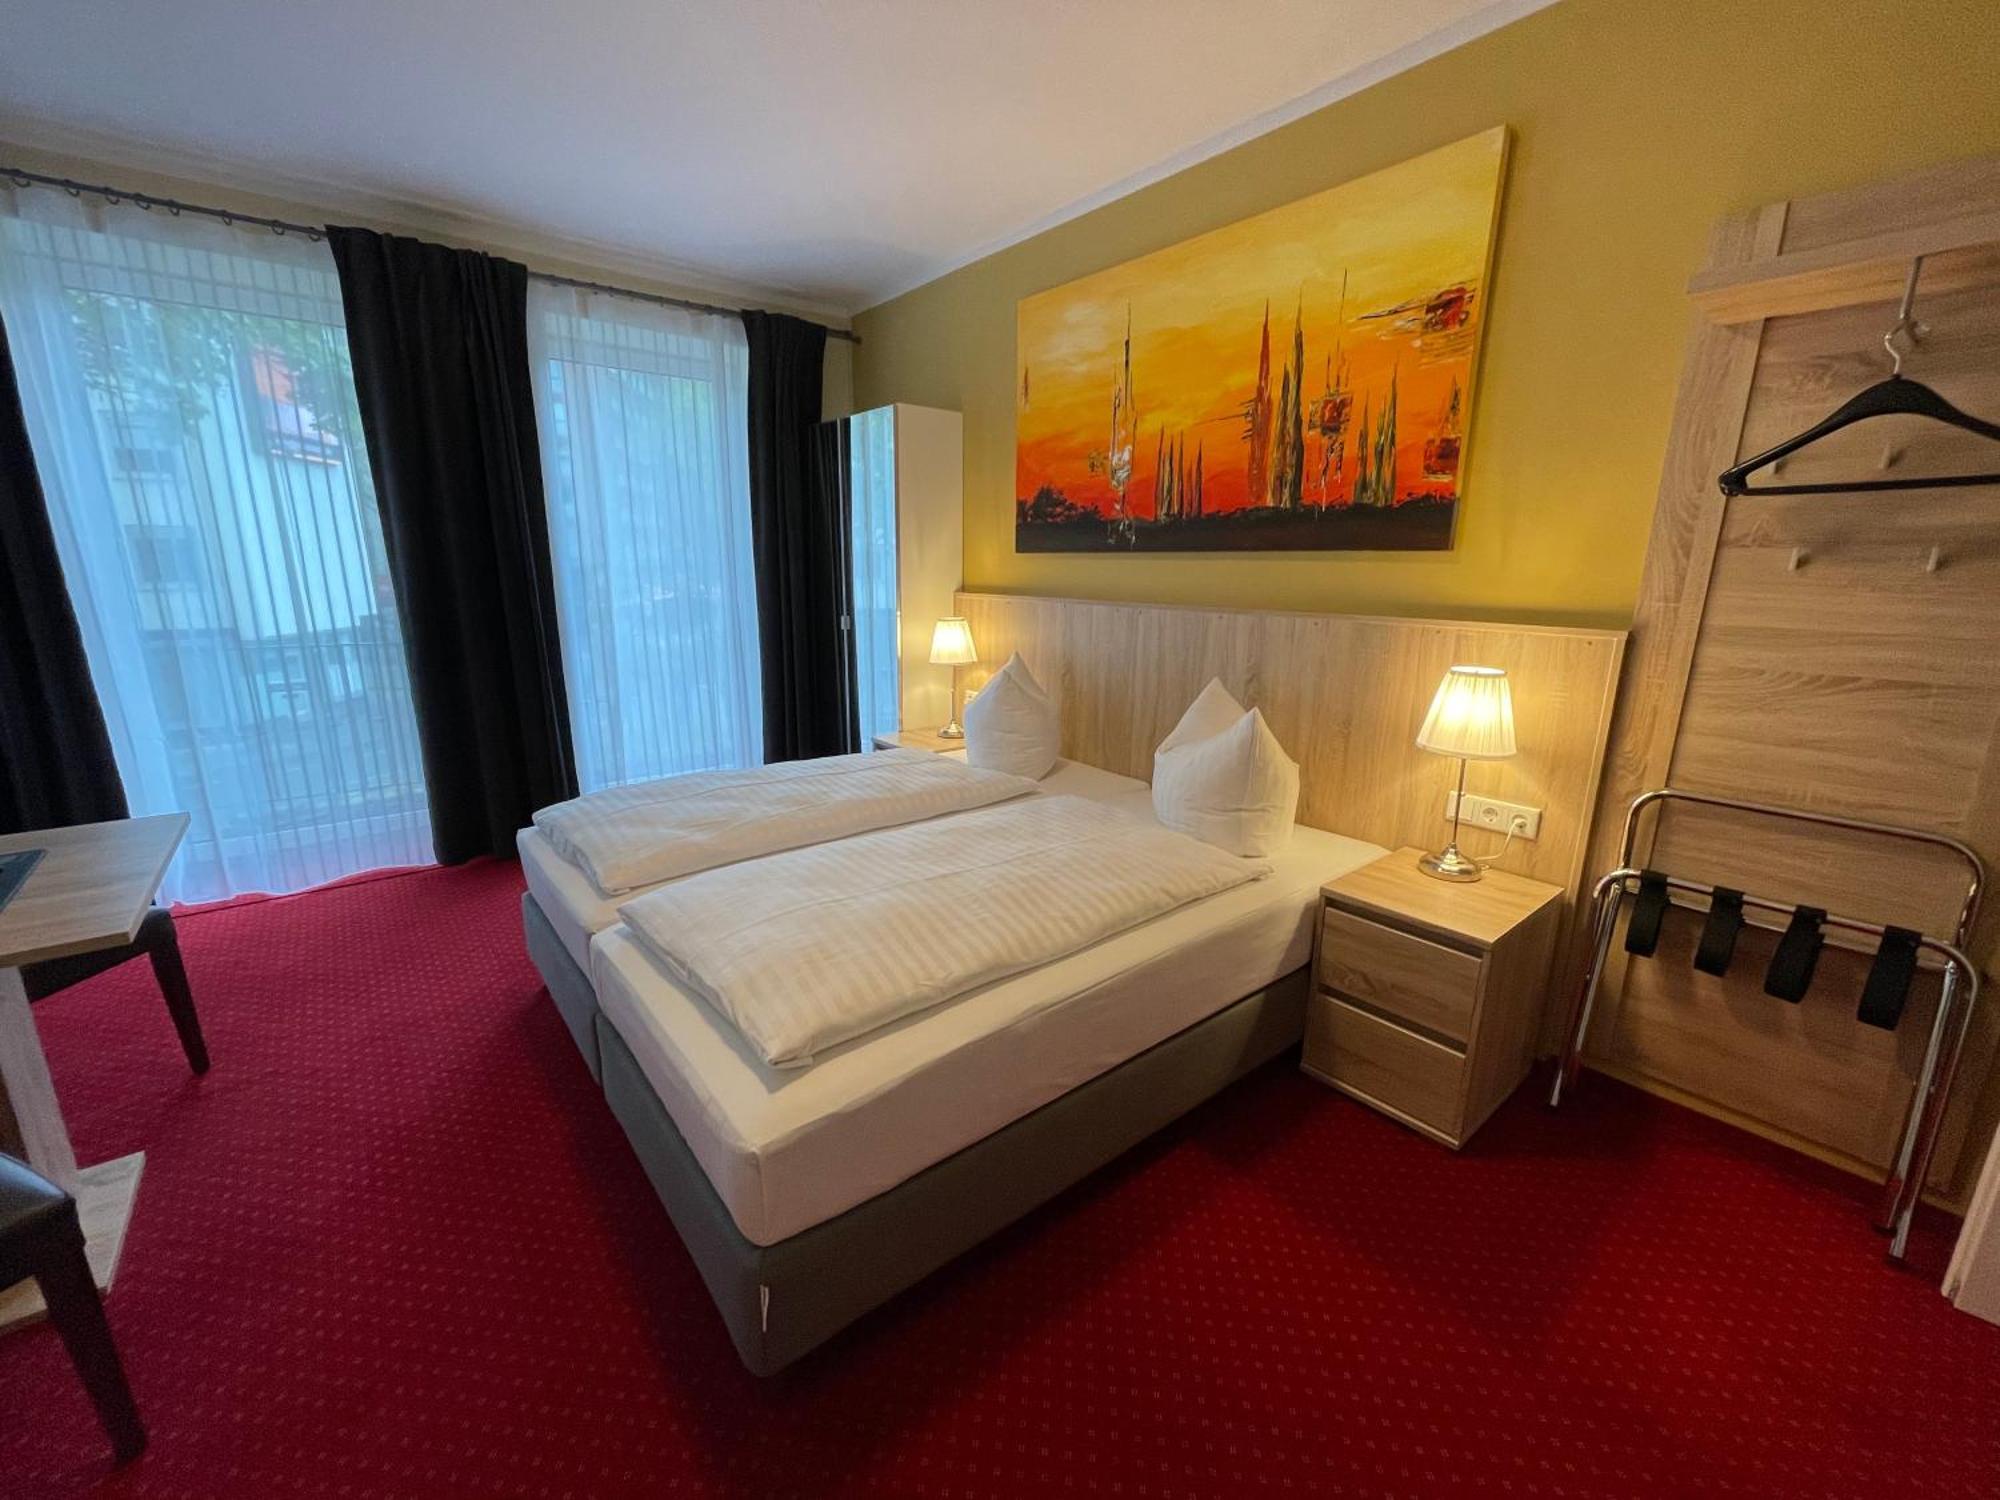 Palm Premium Hotel & Apartments Dusseldorf Exterior photo